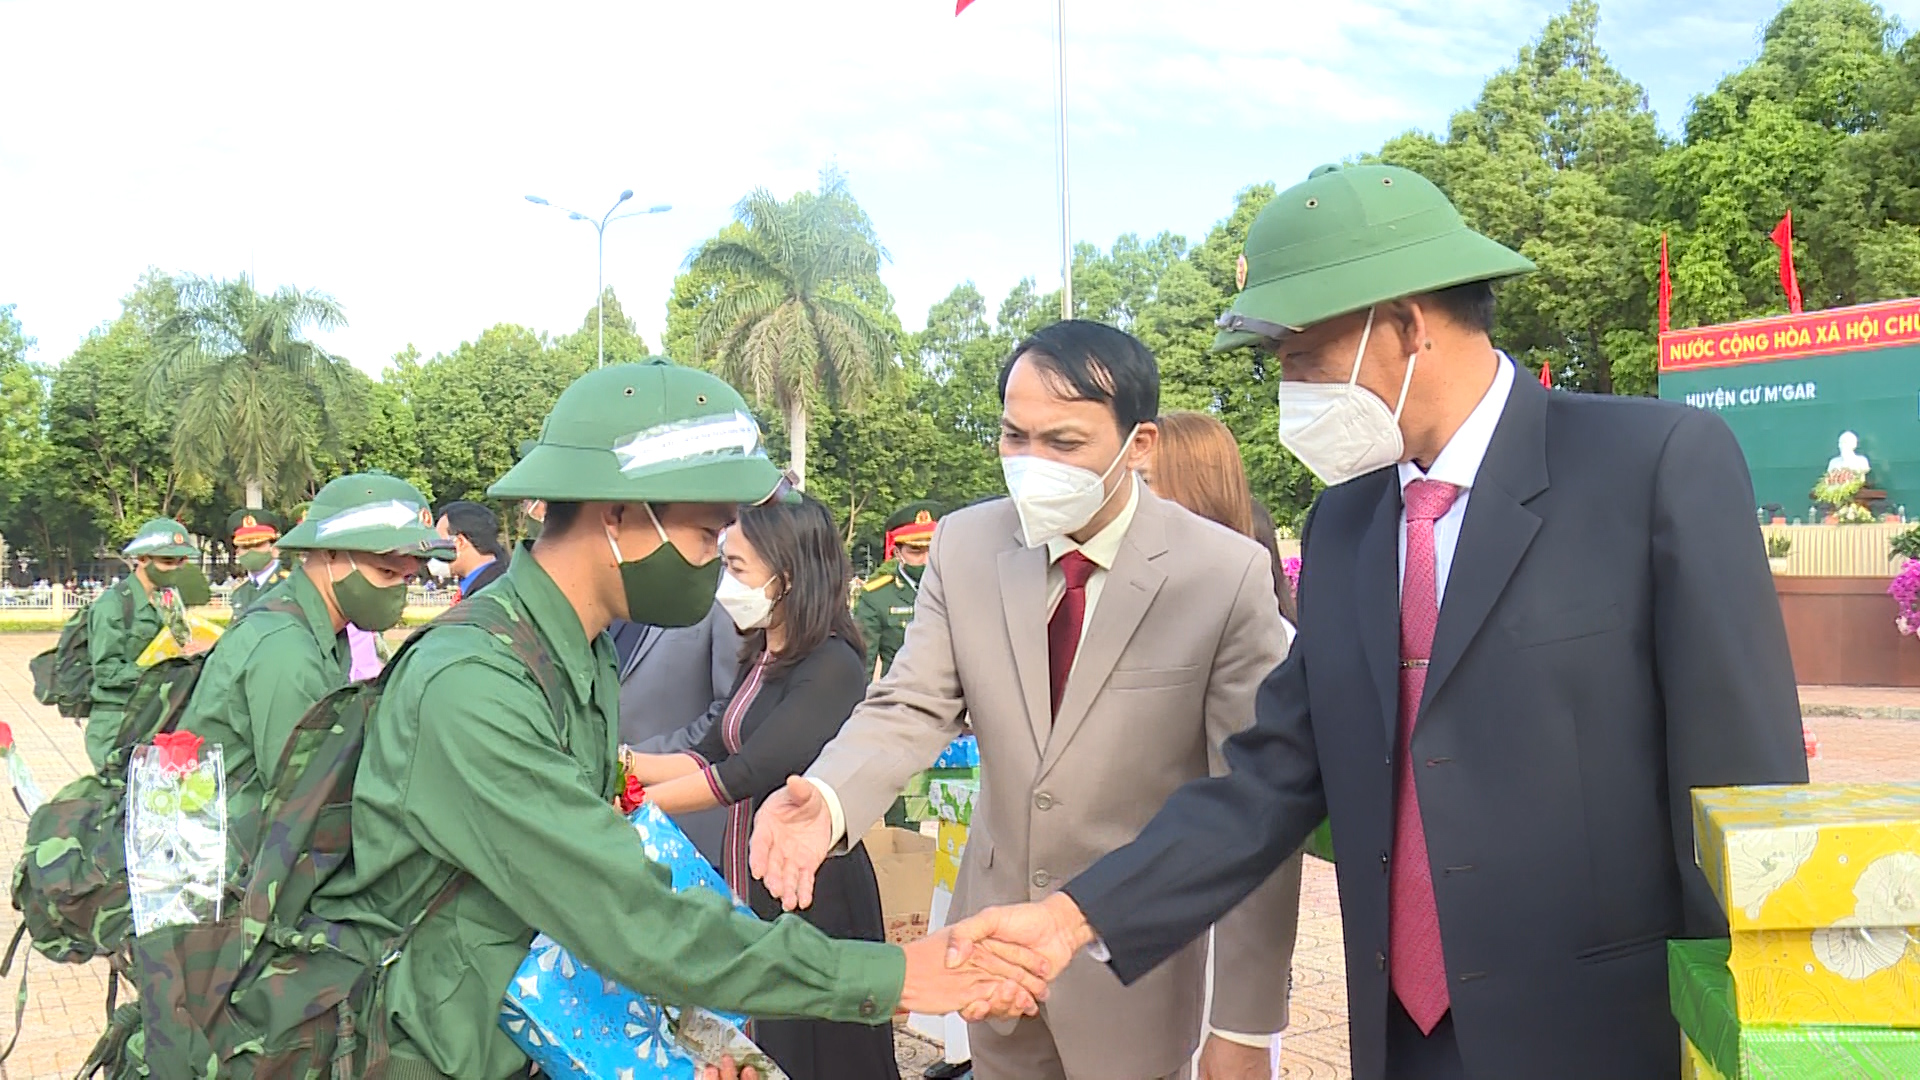 Huyện Cư M'gar tổ chức lễ giao, nhận quân năm 2022